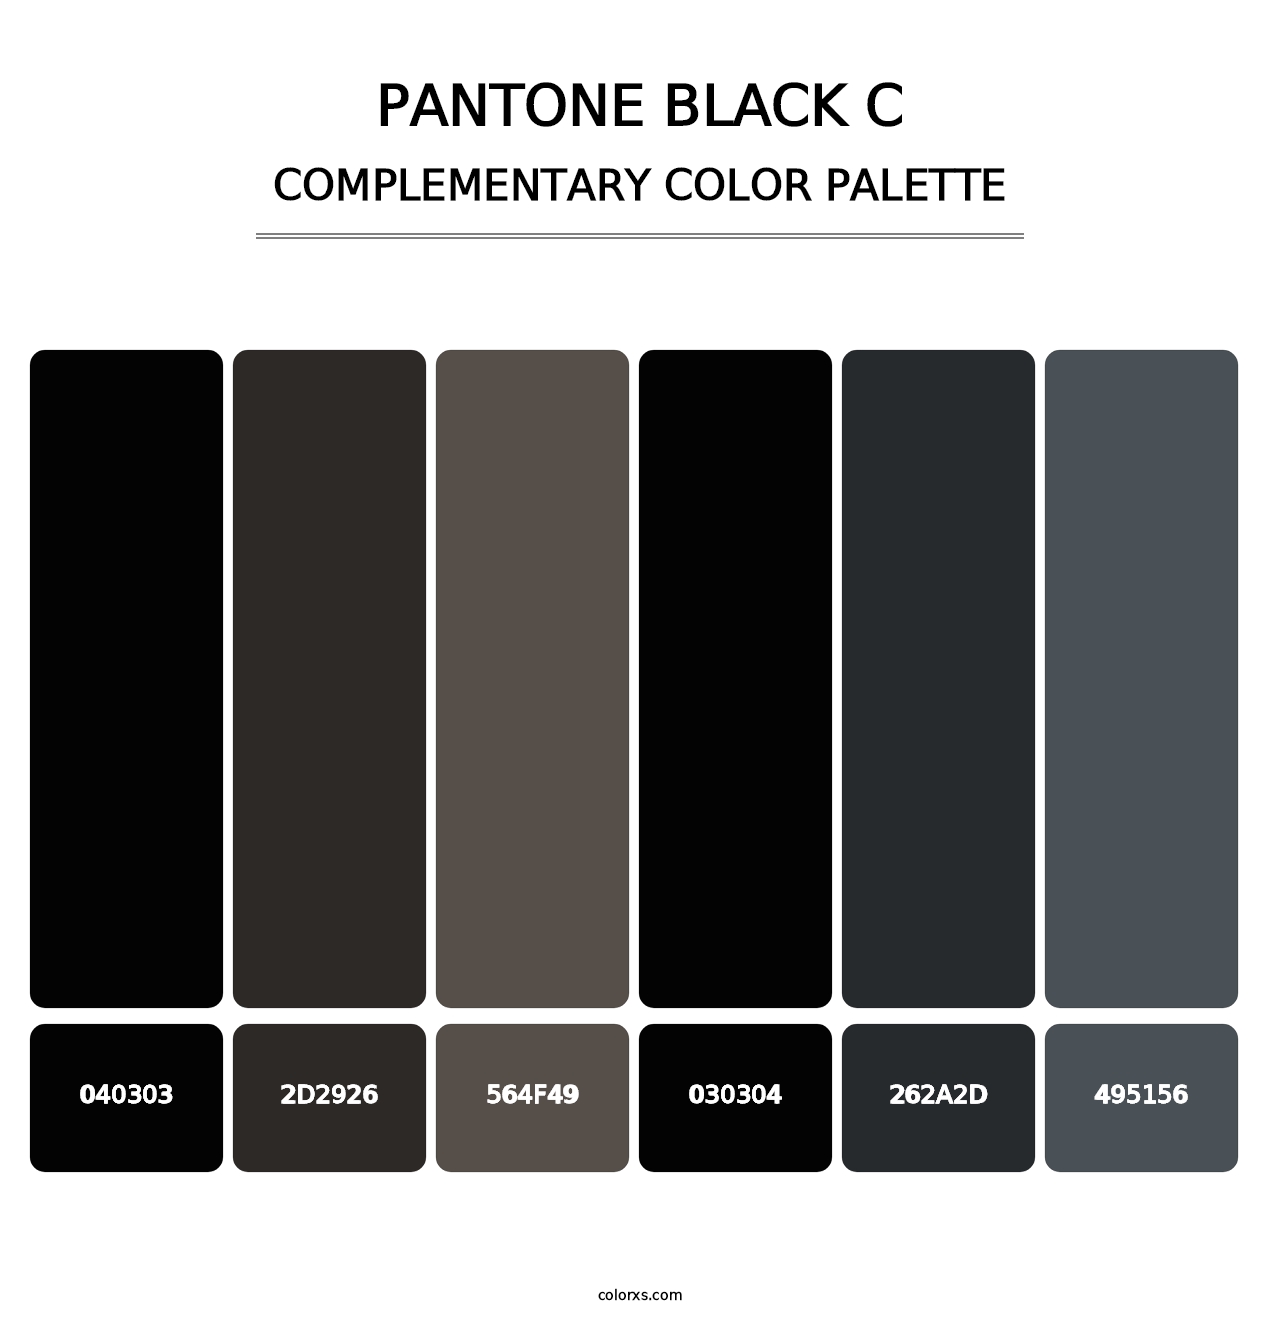 PANTONE Black C - Complementary Color Palette